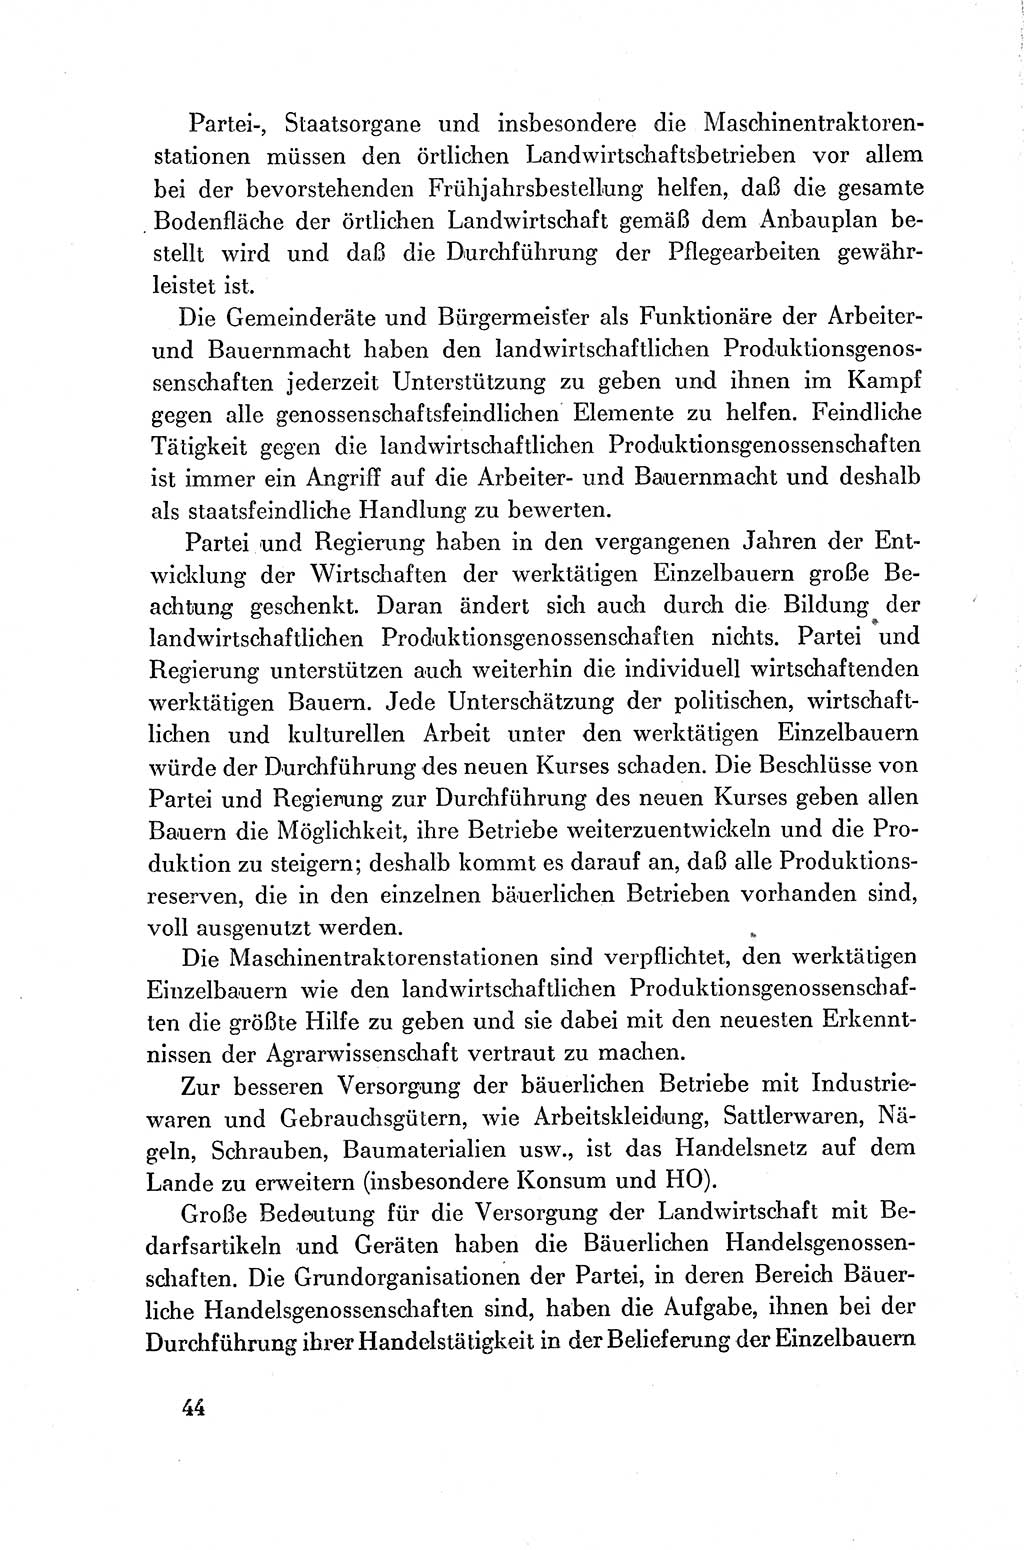 Dokumente der Sozialistischen Einheitspartei Deutschlands (SED) [Deutsche Demokratische Republik (DDR)] 1954-1955, Seite 44 (Dok. SED DDR 1954-1955, S. 44)